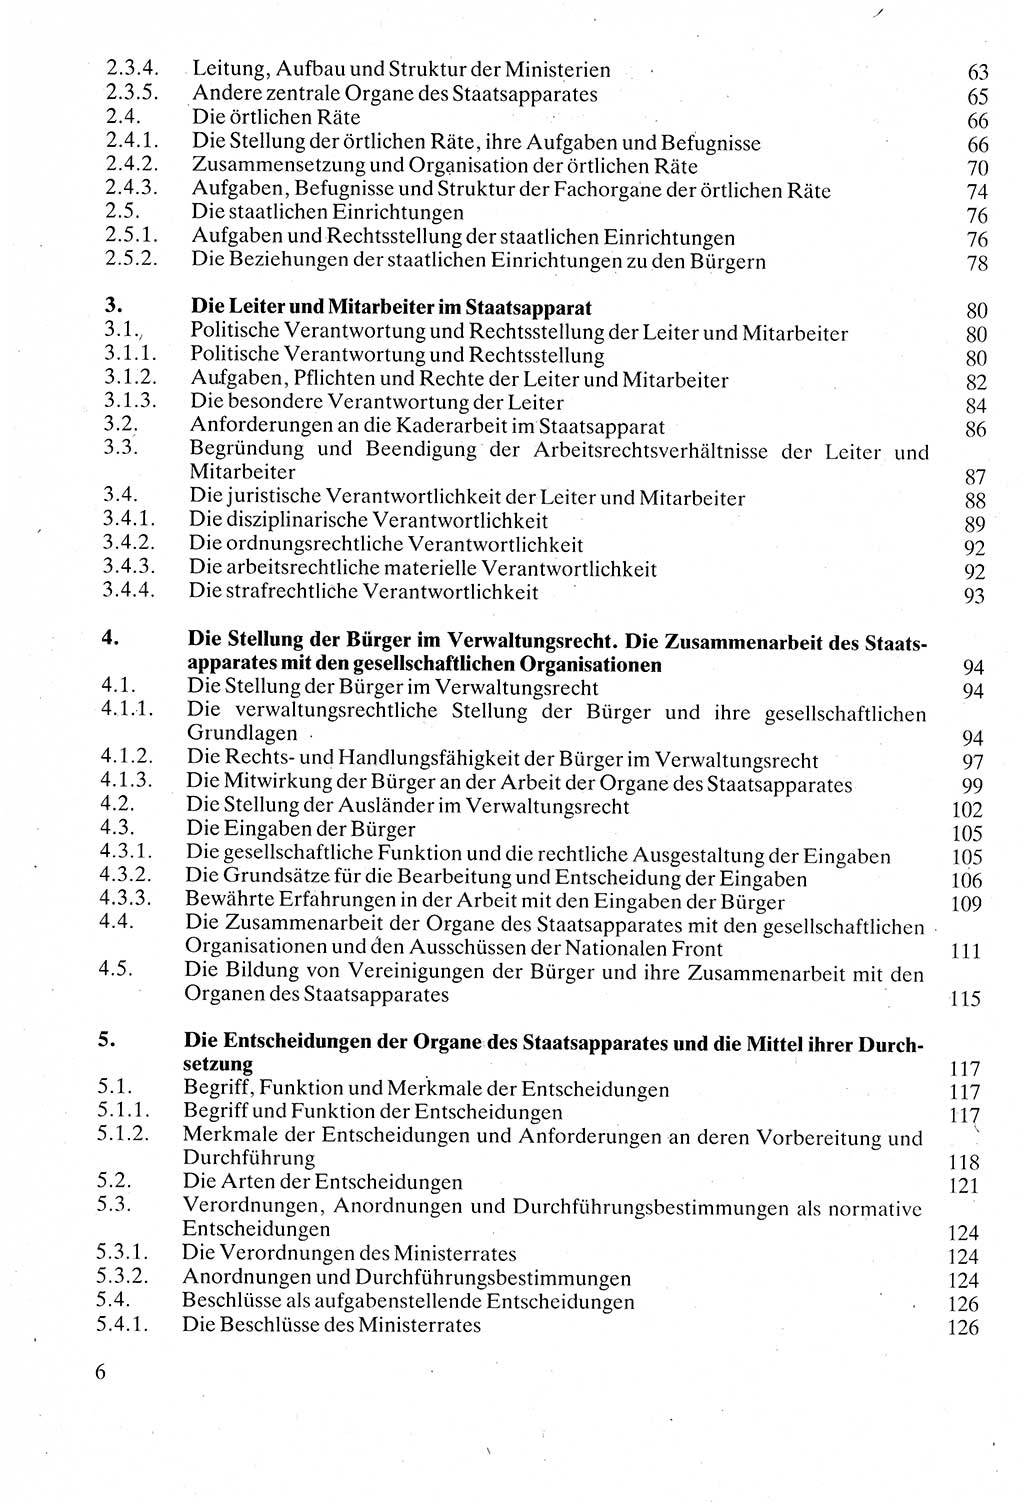 Verwaltungsrecht [Deutsche Demokratische Republik (DDR)], Lehrbuch 1988, Seite 6 (Verw.-R. DDR Lb. 1988, S. 6)